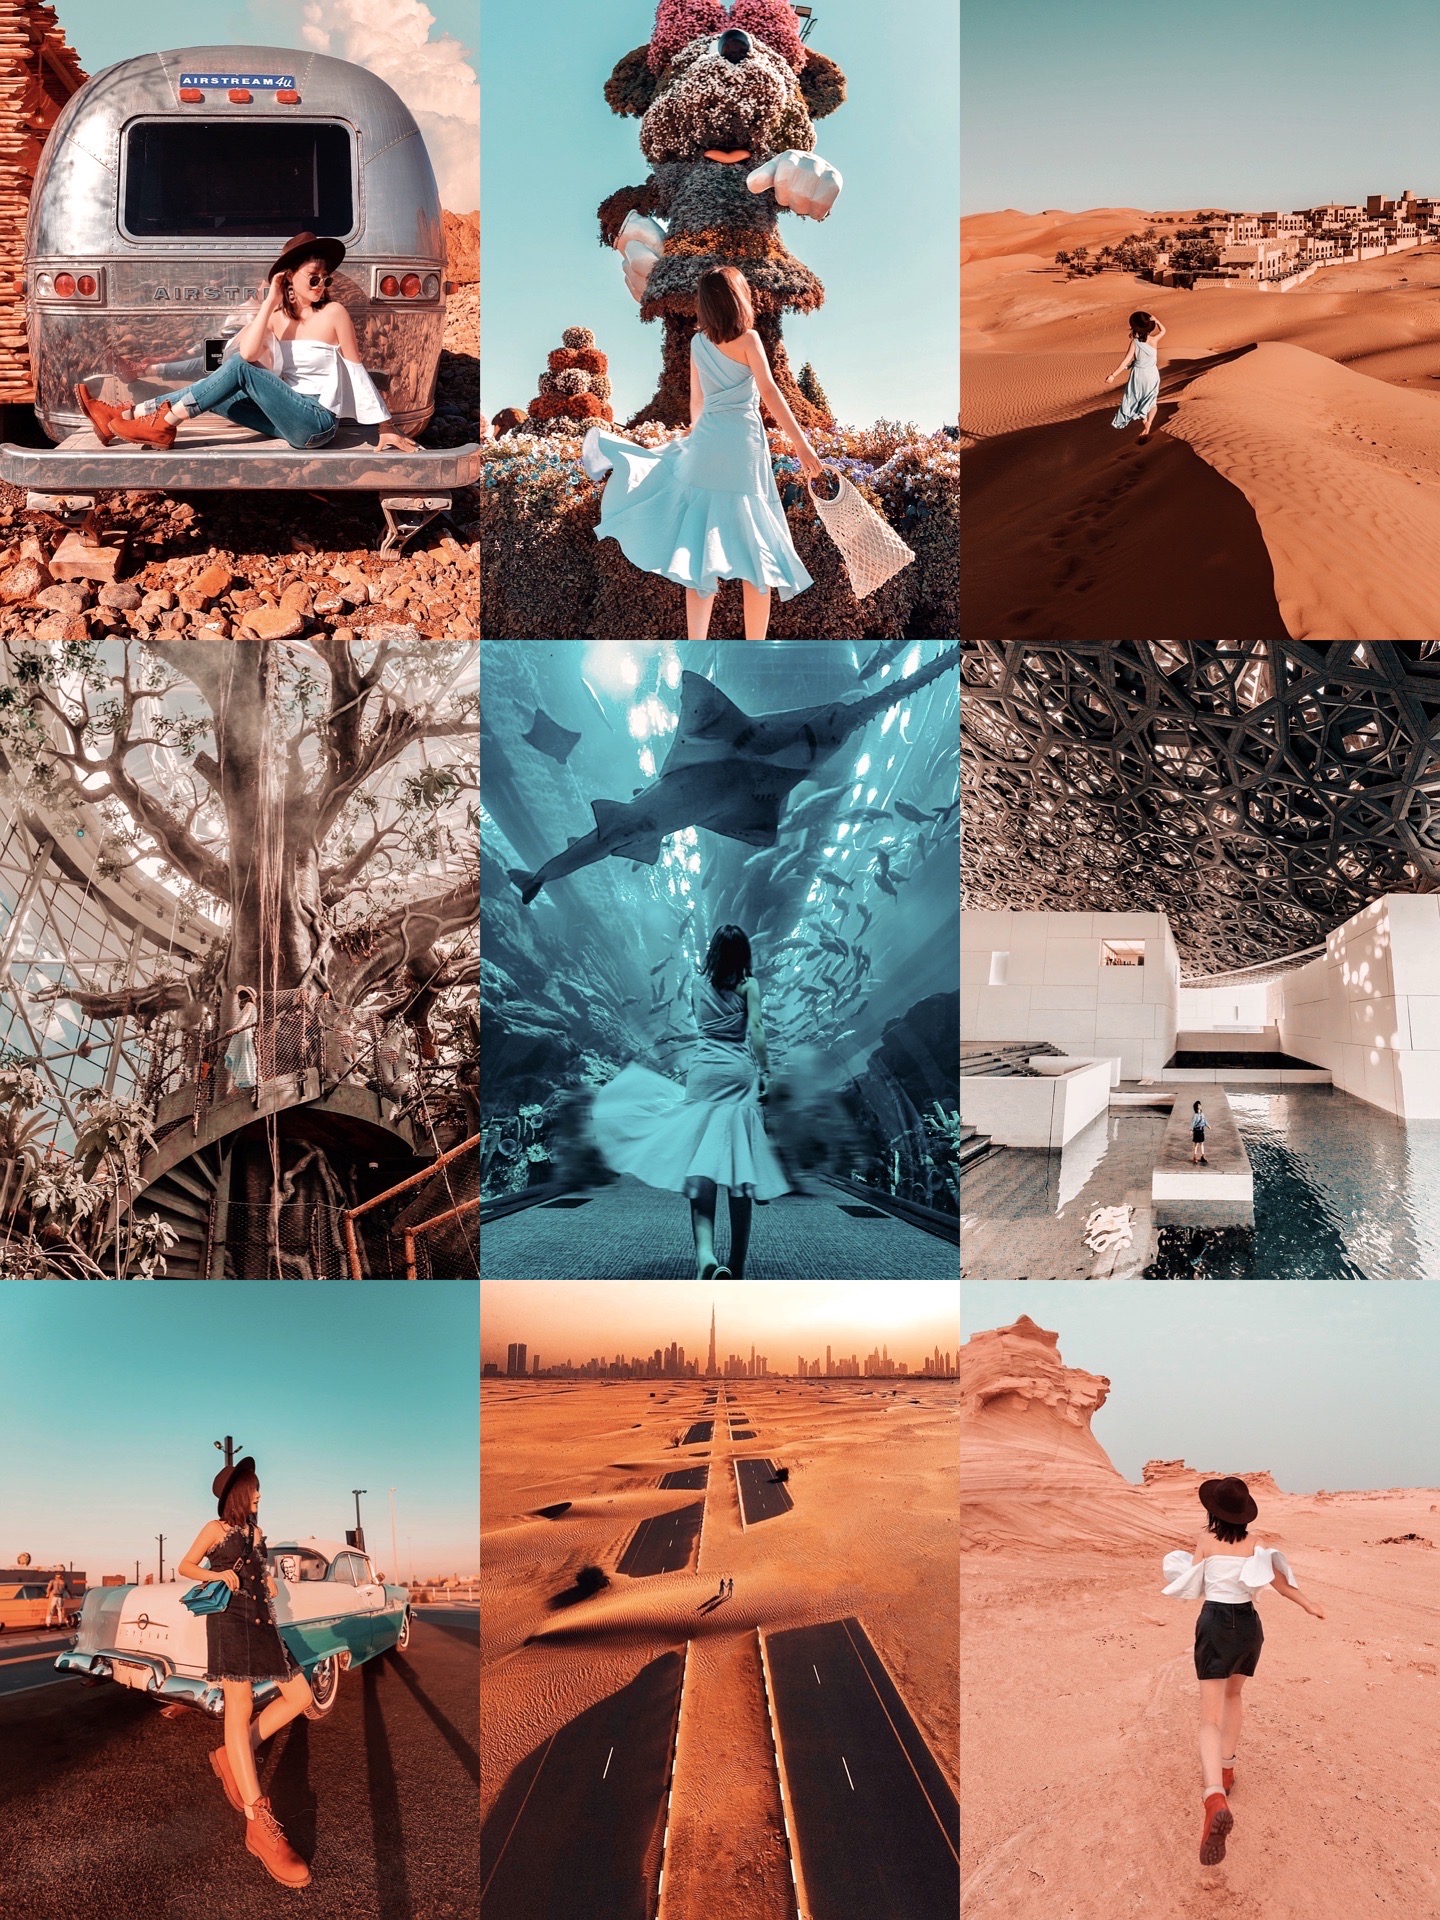 🇦🇪【迪拜】不能错过的小众景点，原来可以这么拍 🌀🌀盖斯尔奥萨拉安纳塔拉沙漠度假酒店 之前有专门发过